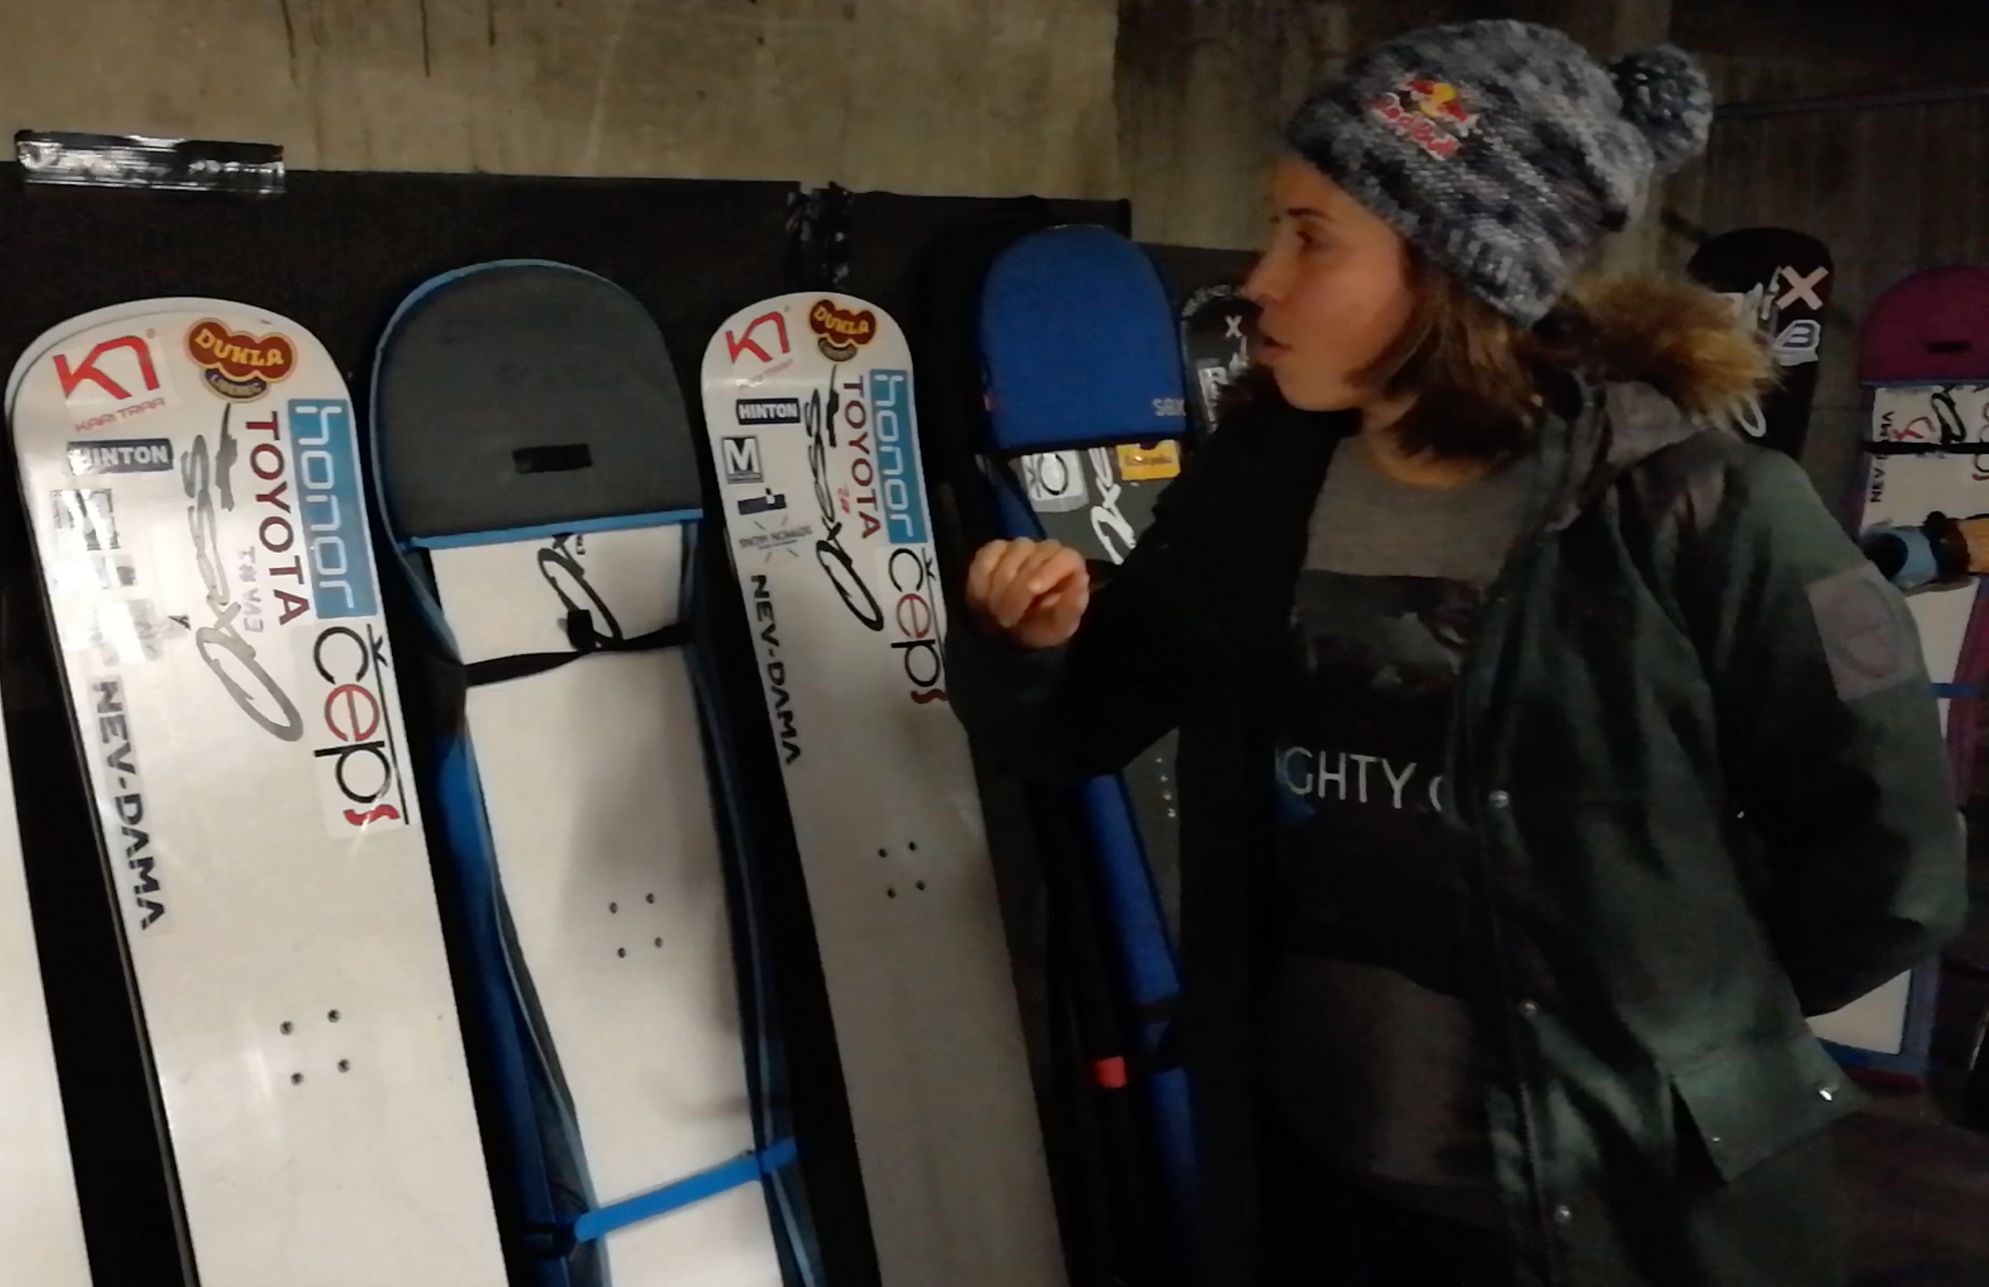 Eva Samková ve videoblogu ukázala svoji mazárnu snowboardů